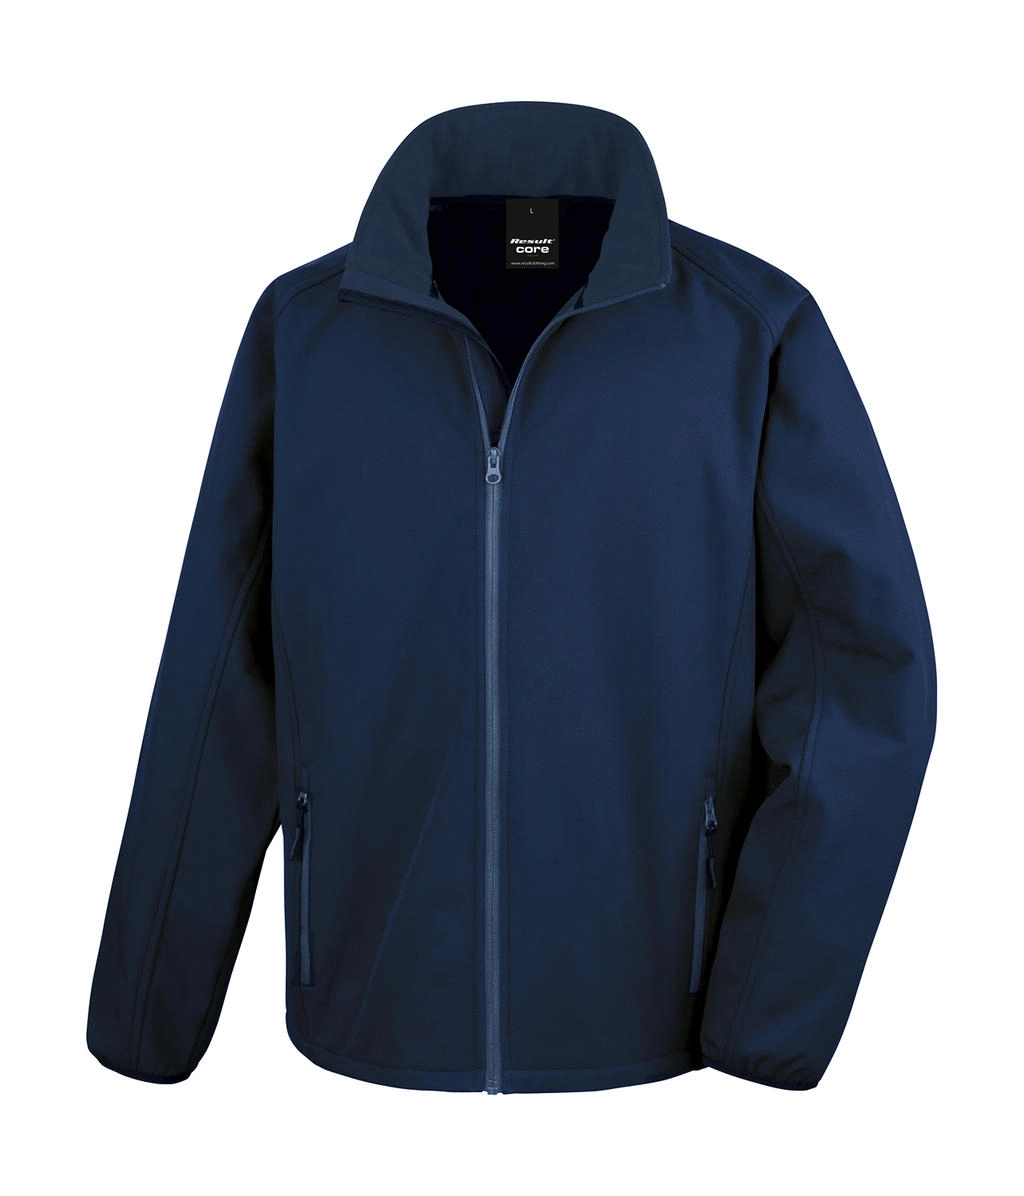 Printable Softshell Jacket zum Besticken und Bedrucken in der Farbe Navy/Navy mit Ihren Logo, Schriftzug oder Motiv.